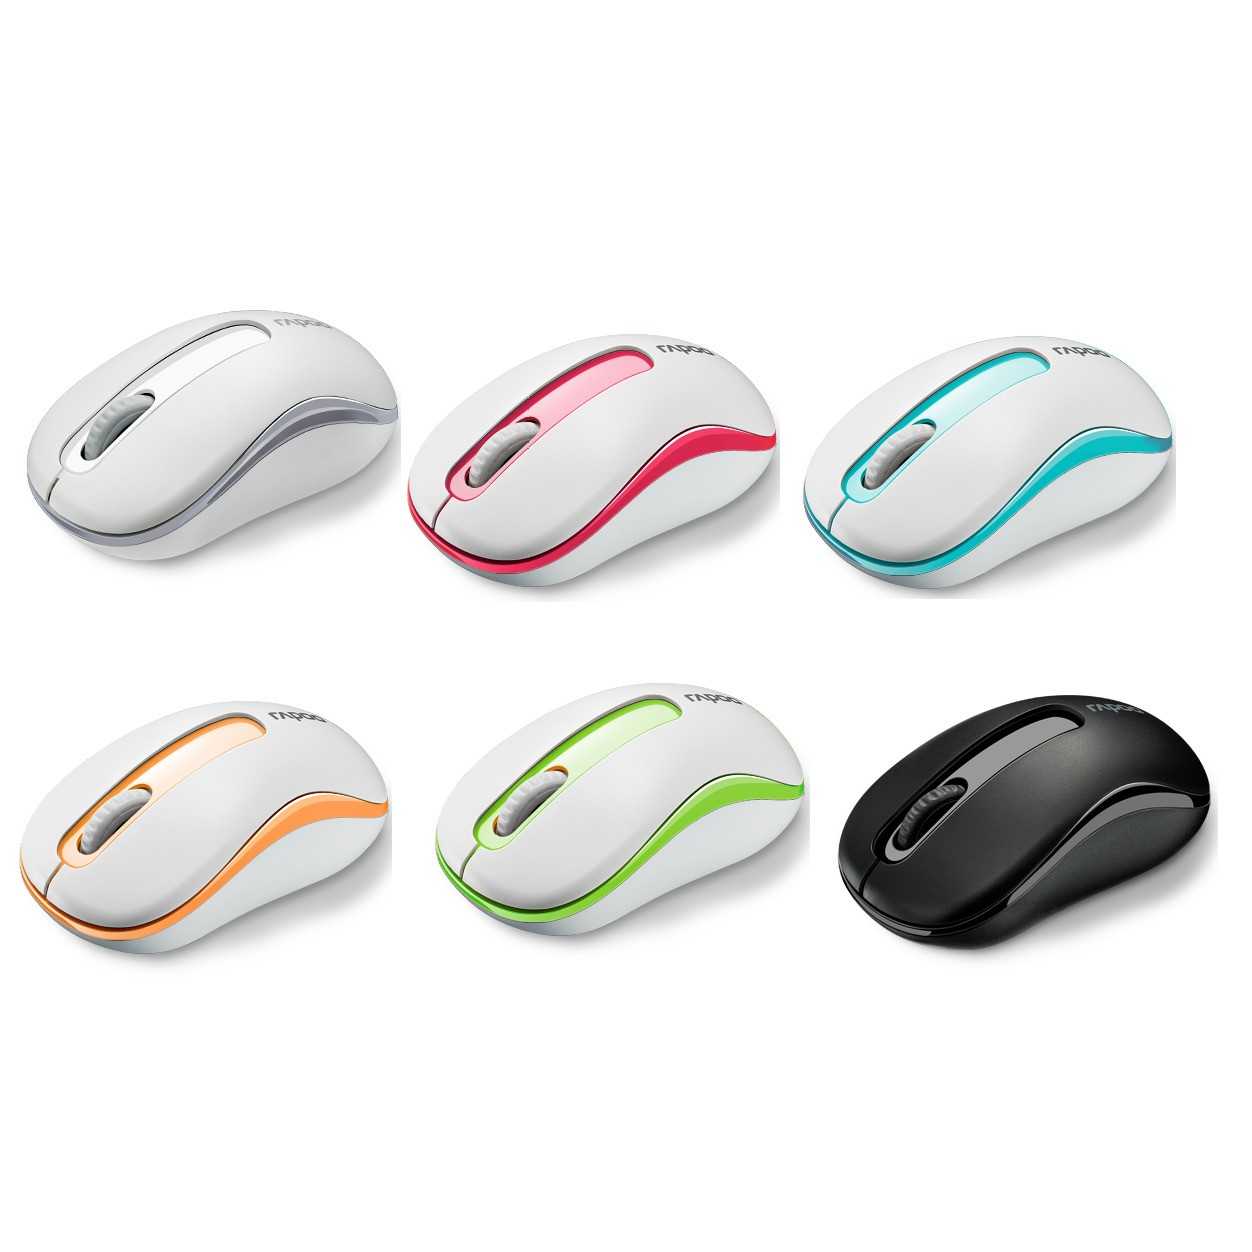 Беспроводная мышь oklick wireless optical mouse 525mw blue usb 2.0 — купить, цена и характеристики, отзывы